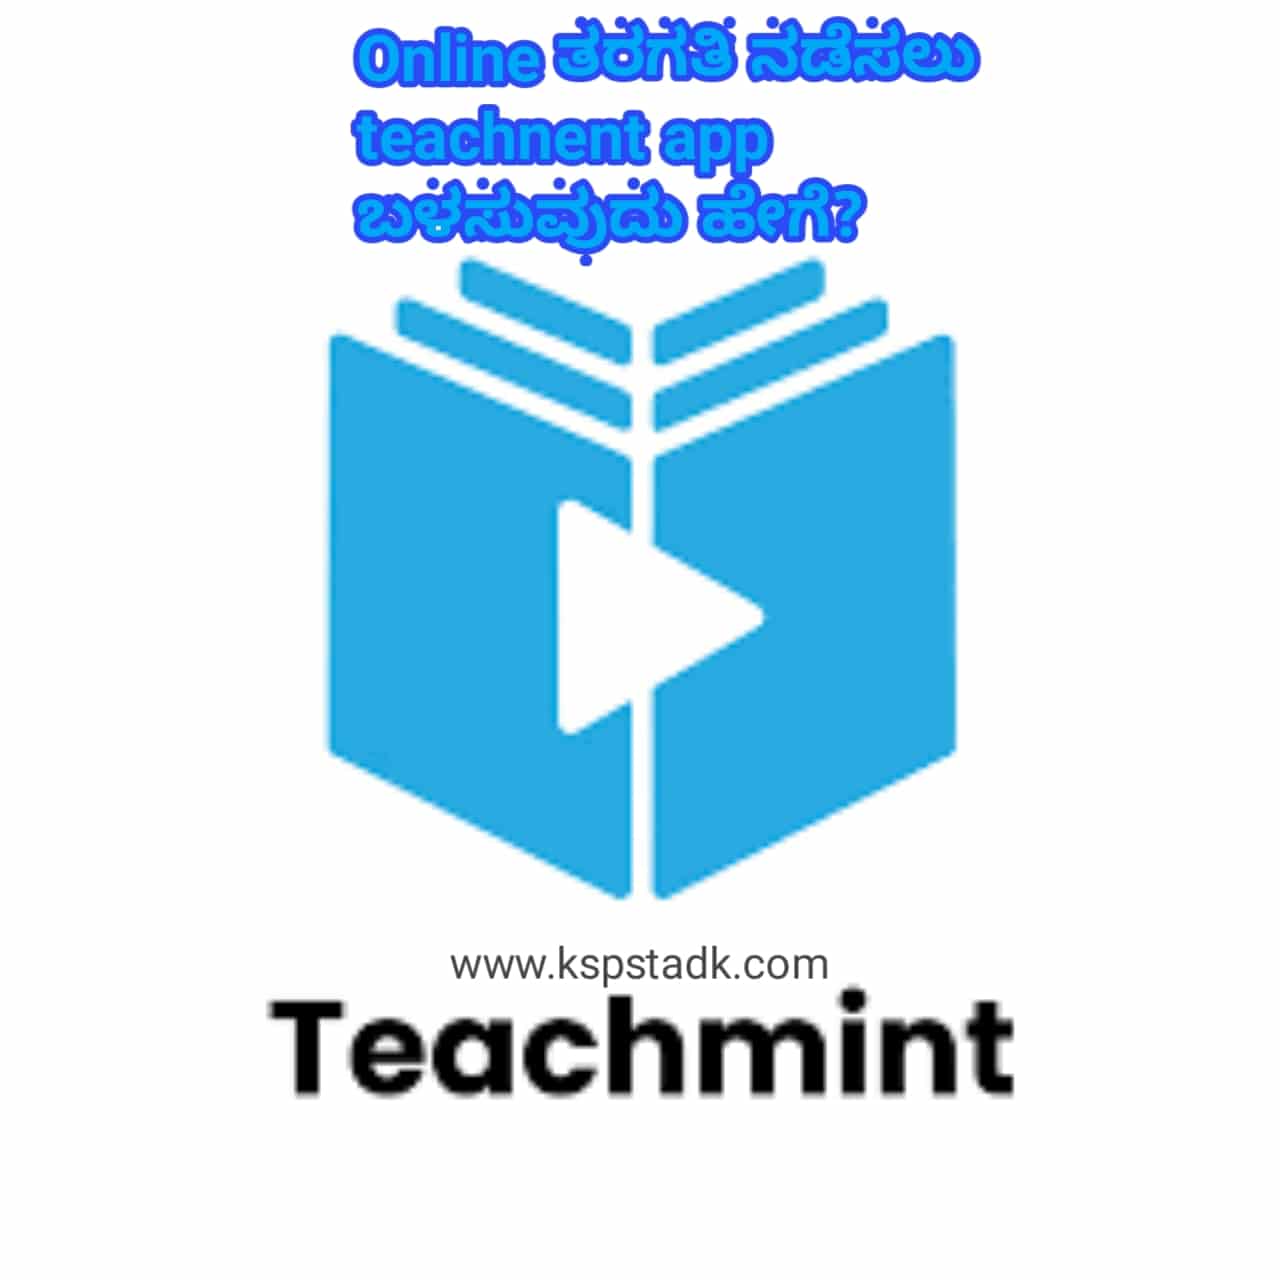 How to use teachment app